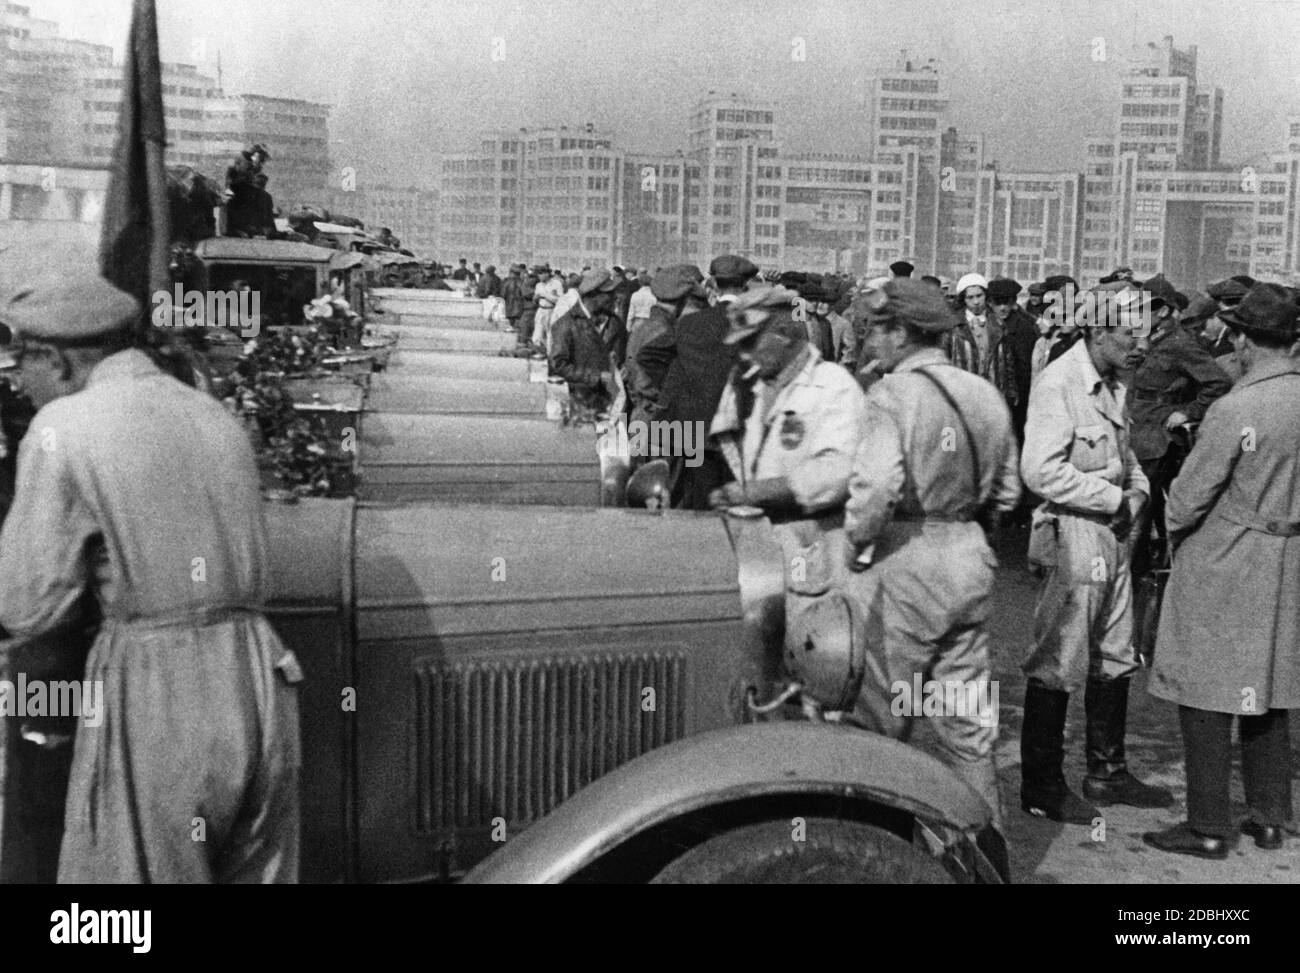 Fahrer aus sowjetischen Fabriken machten eine Probefahrt mit Autos, die in der Sowjetunion produziert wurden, die in Moskau begann und weiter nach Charkow ging und dann in Moskau endete. Hier in Charkow in der Ukraine. Die Reise dauerte von 06.07.1933 bis 30.09.1933. Stockfoto